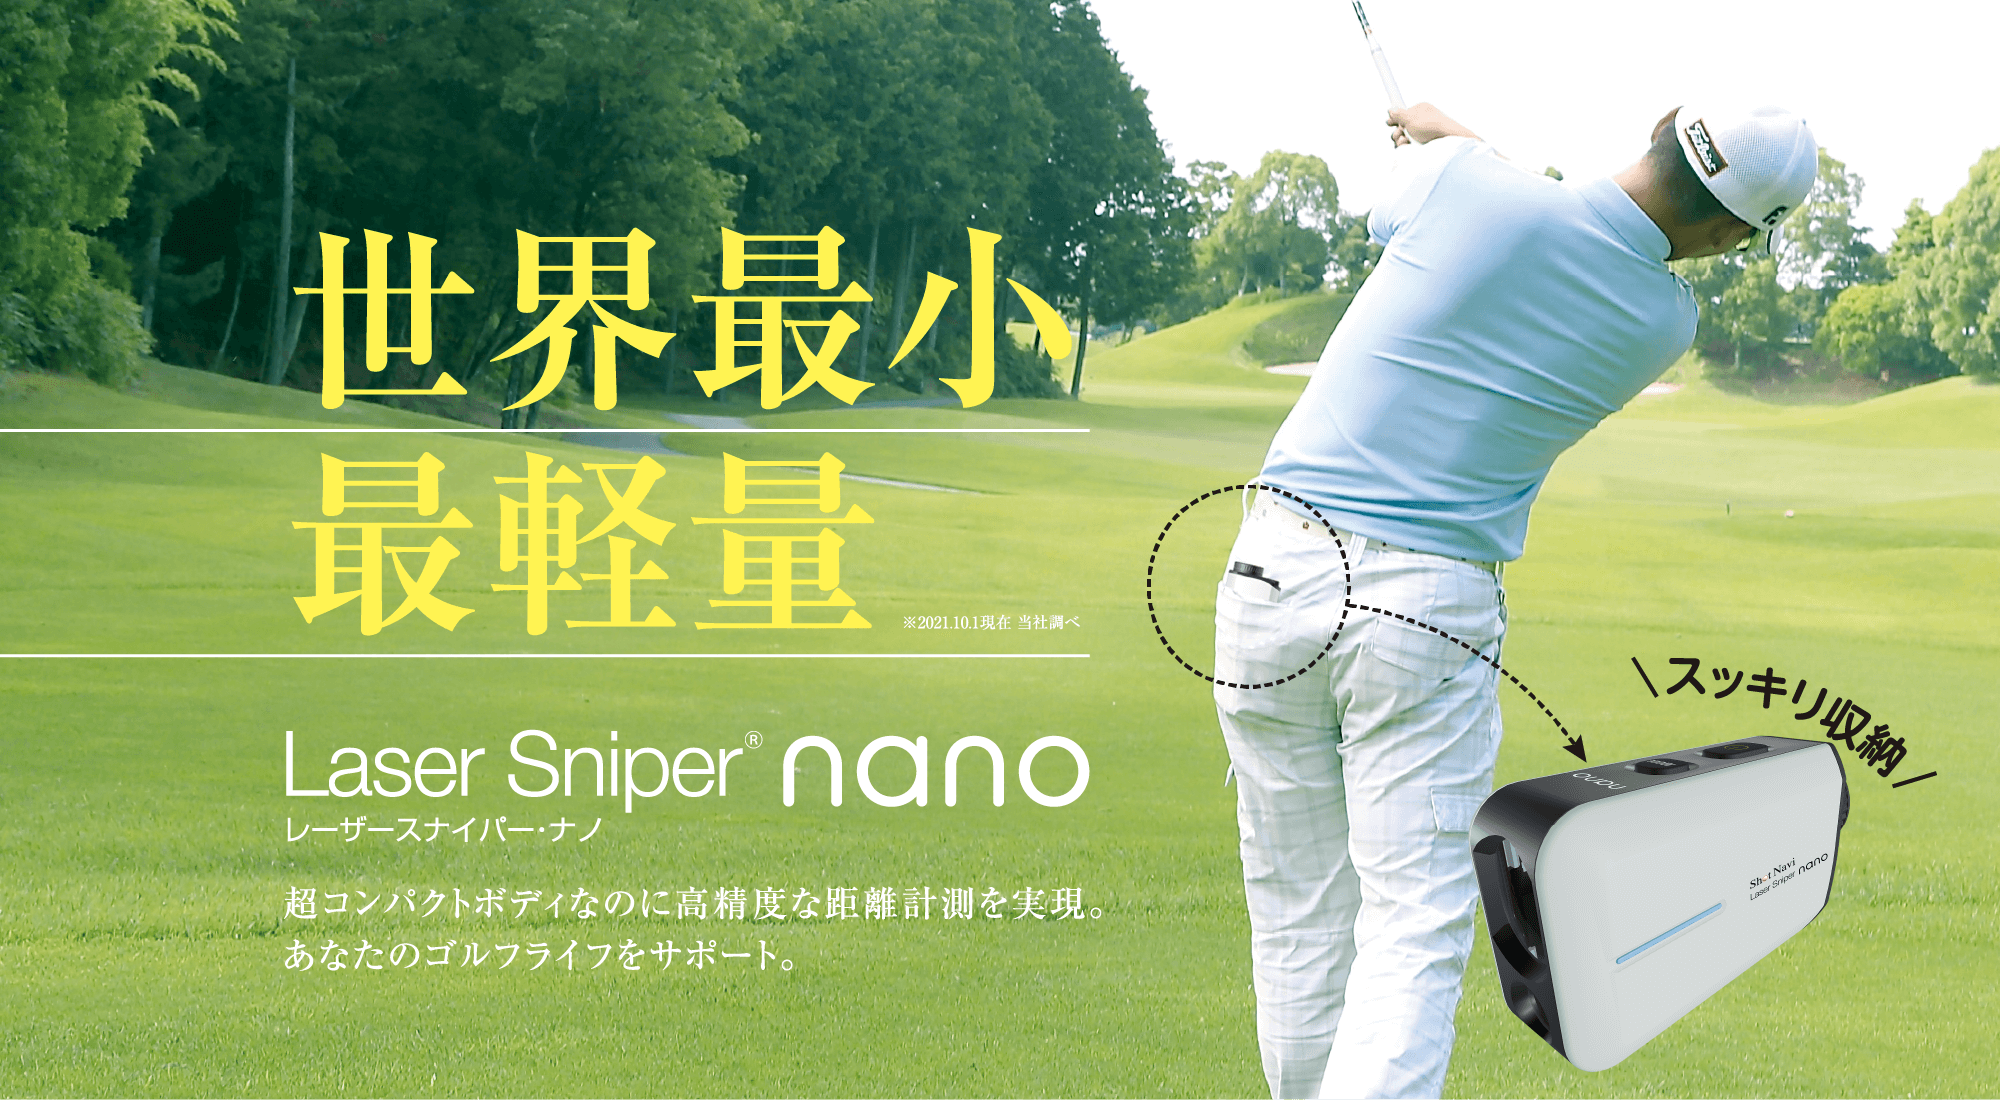 Laser Sniper nano